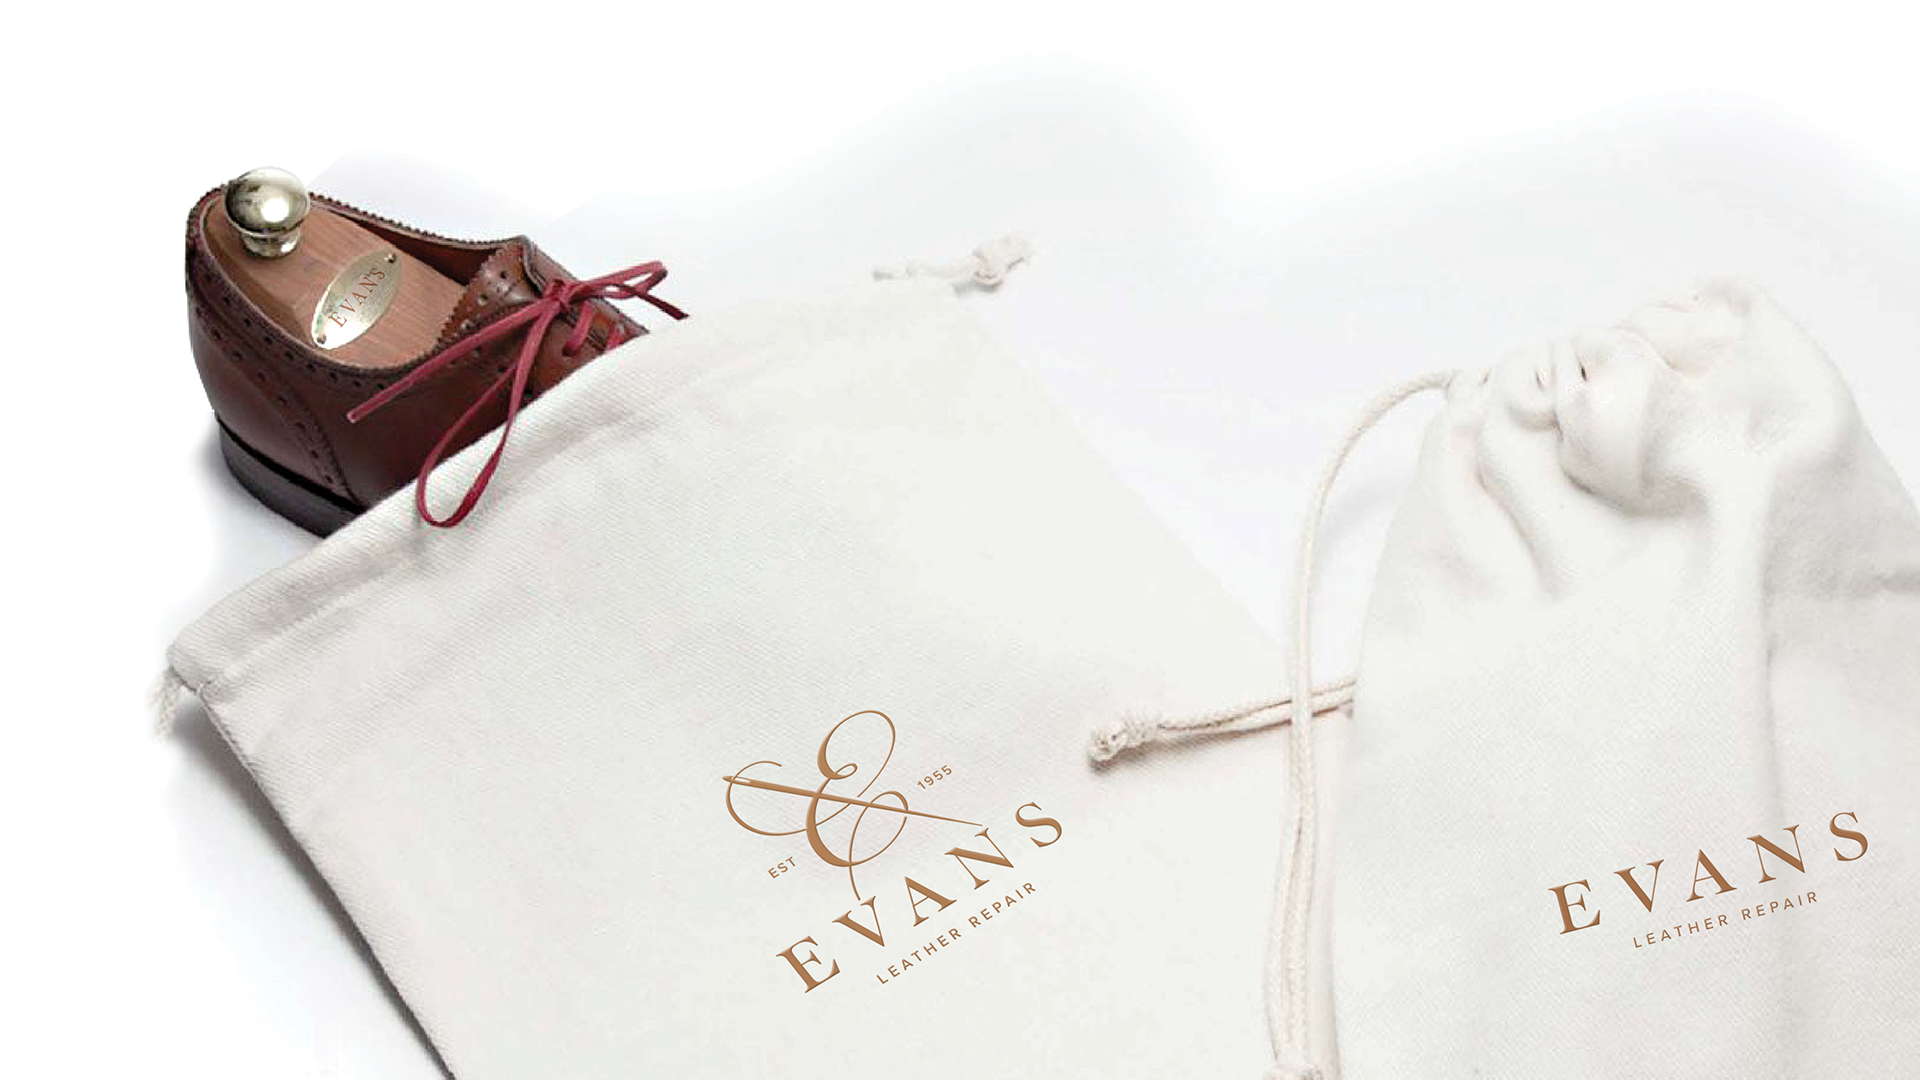 Evans-shoe-repair-bags